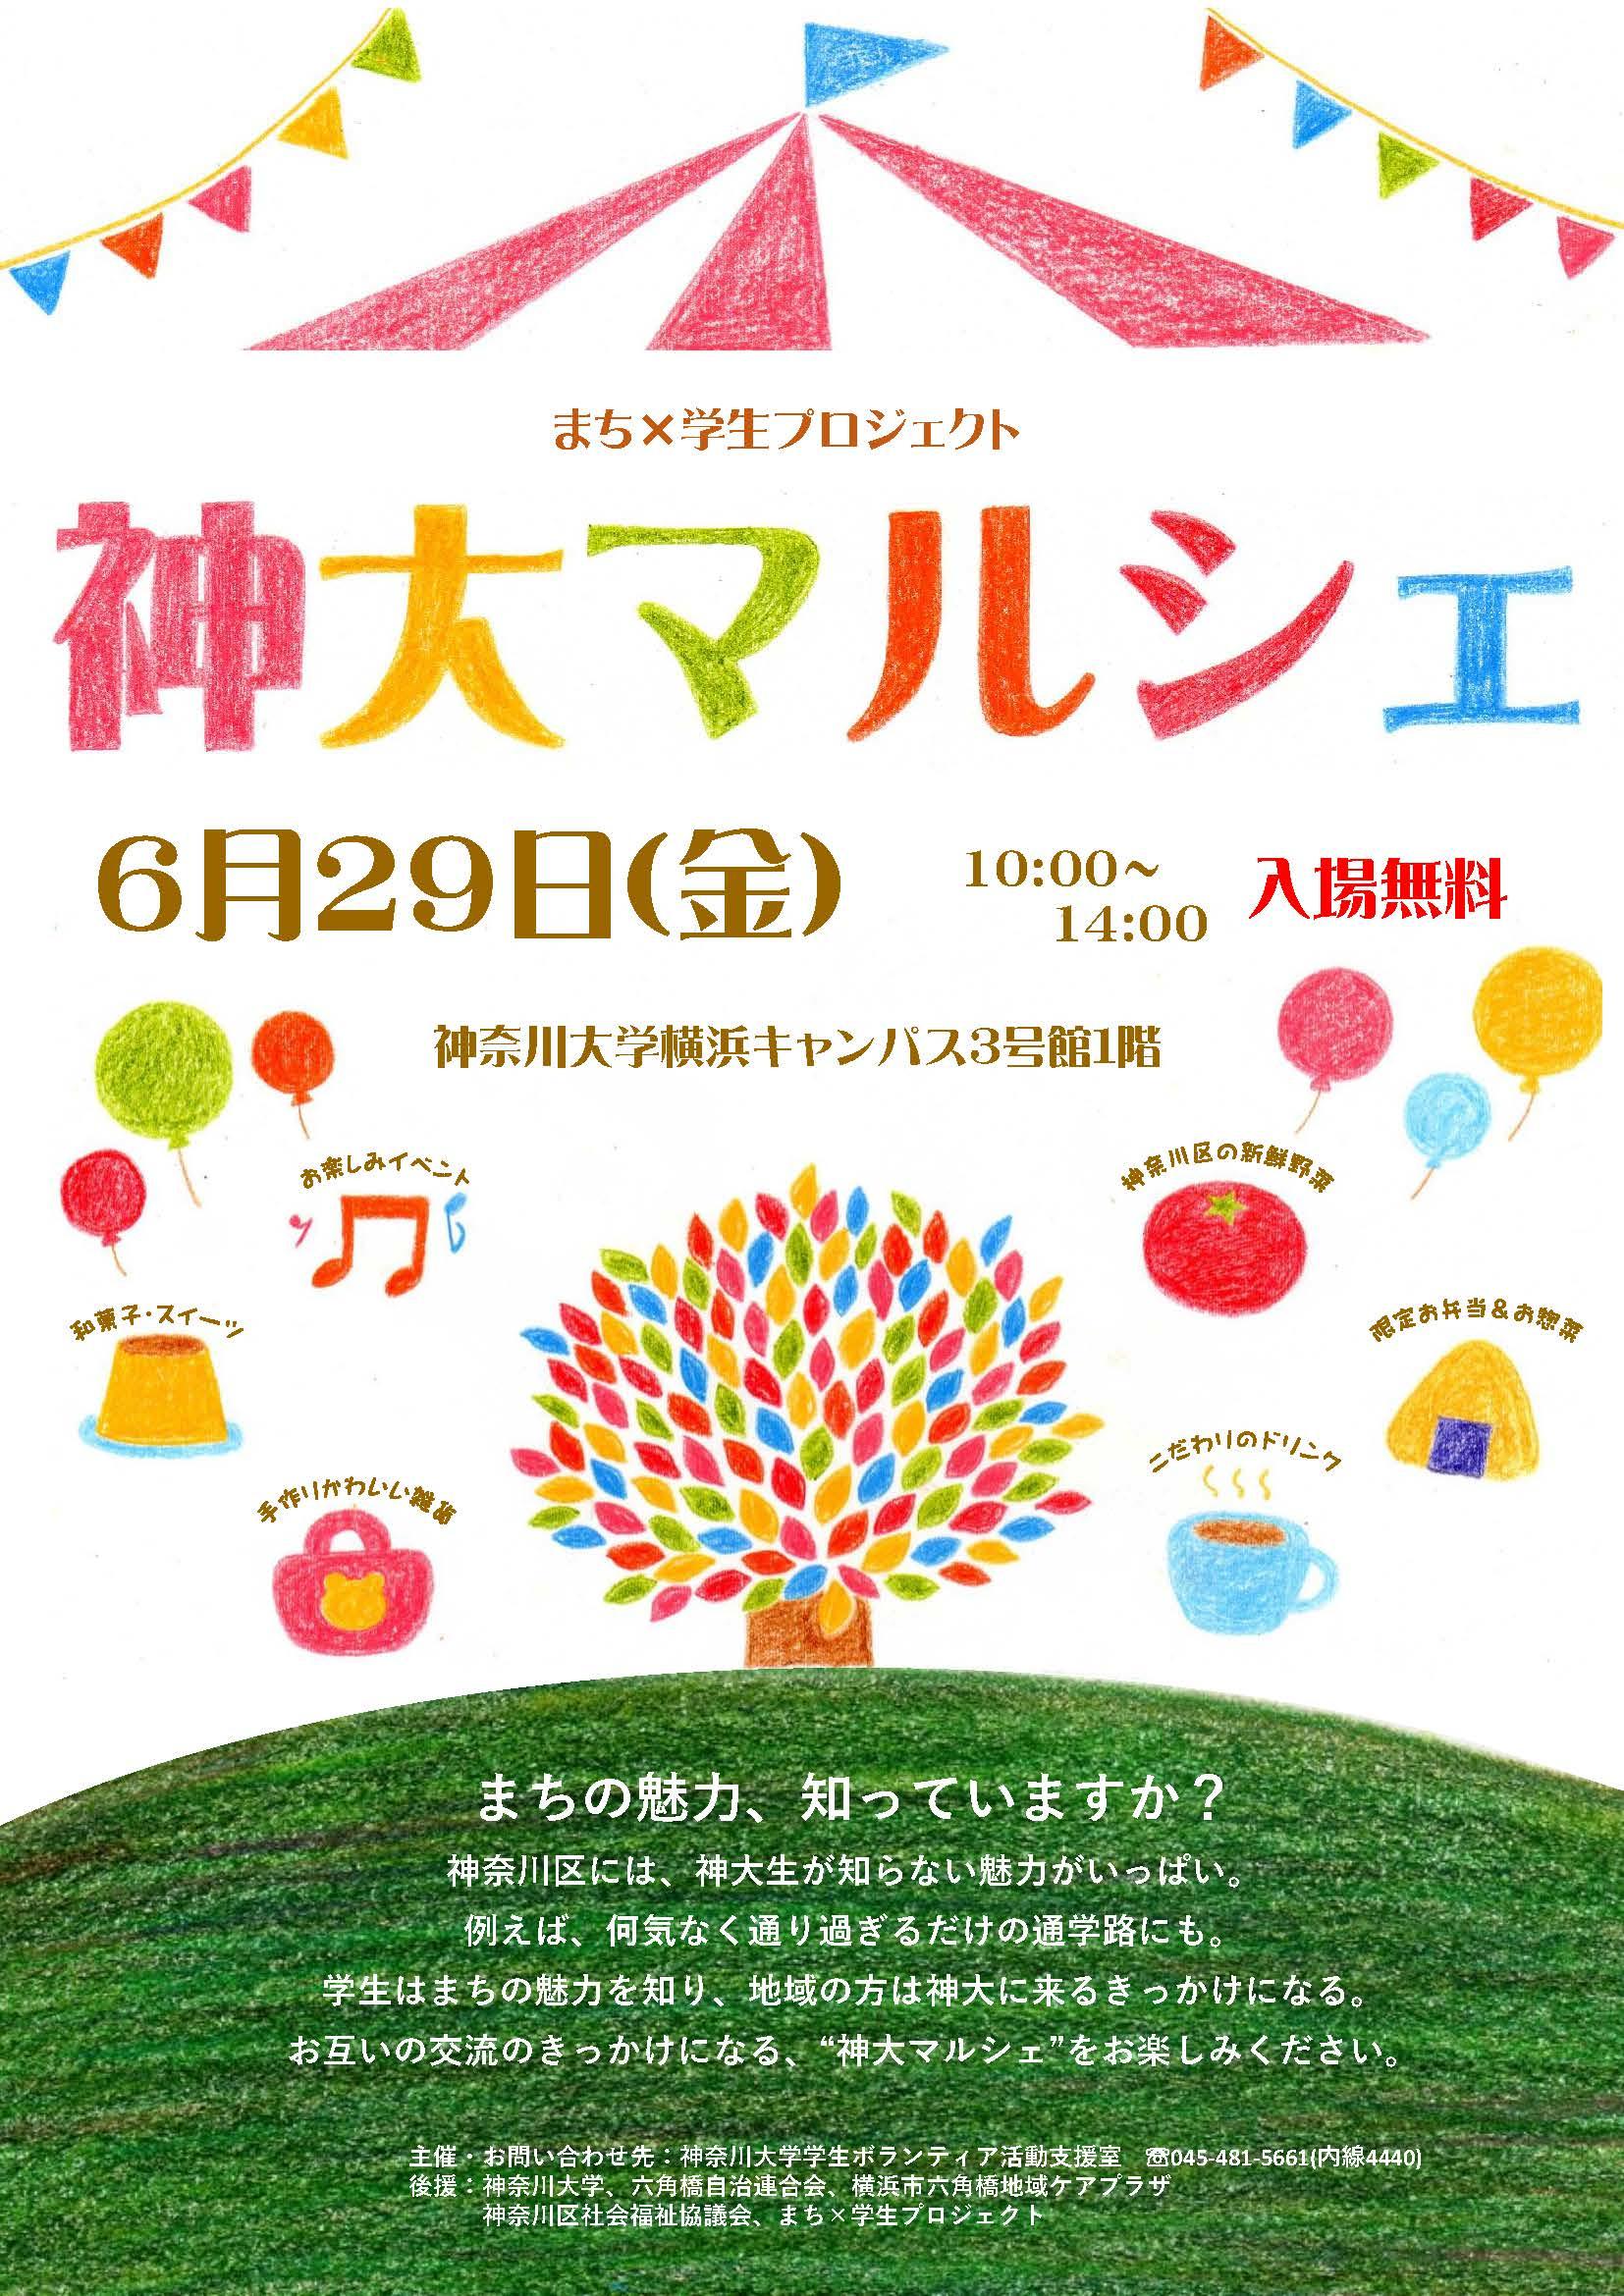 【神奈川大学】まち×学生プロジェクト「第2回神大マルシェ」を開催 -- 地産地消フェア！神奈川区産の野菜を通した地域・大学の交流の場 -- 